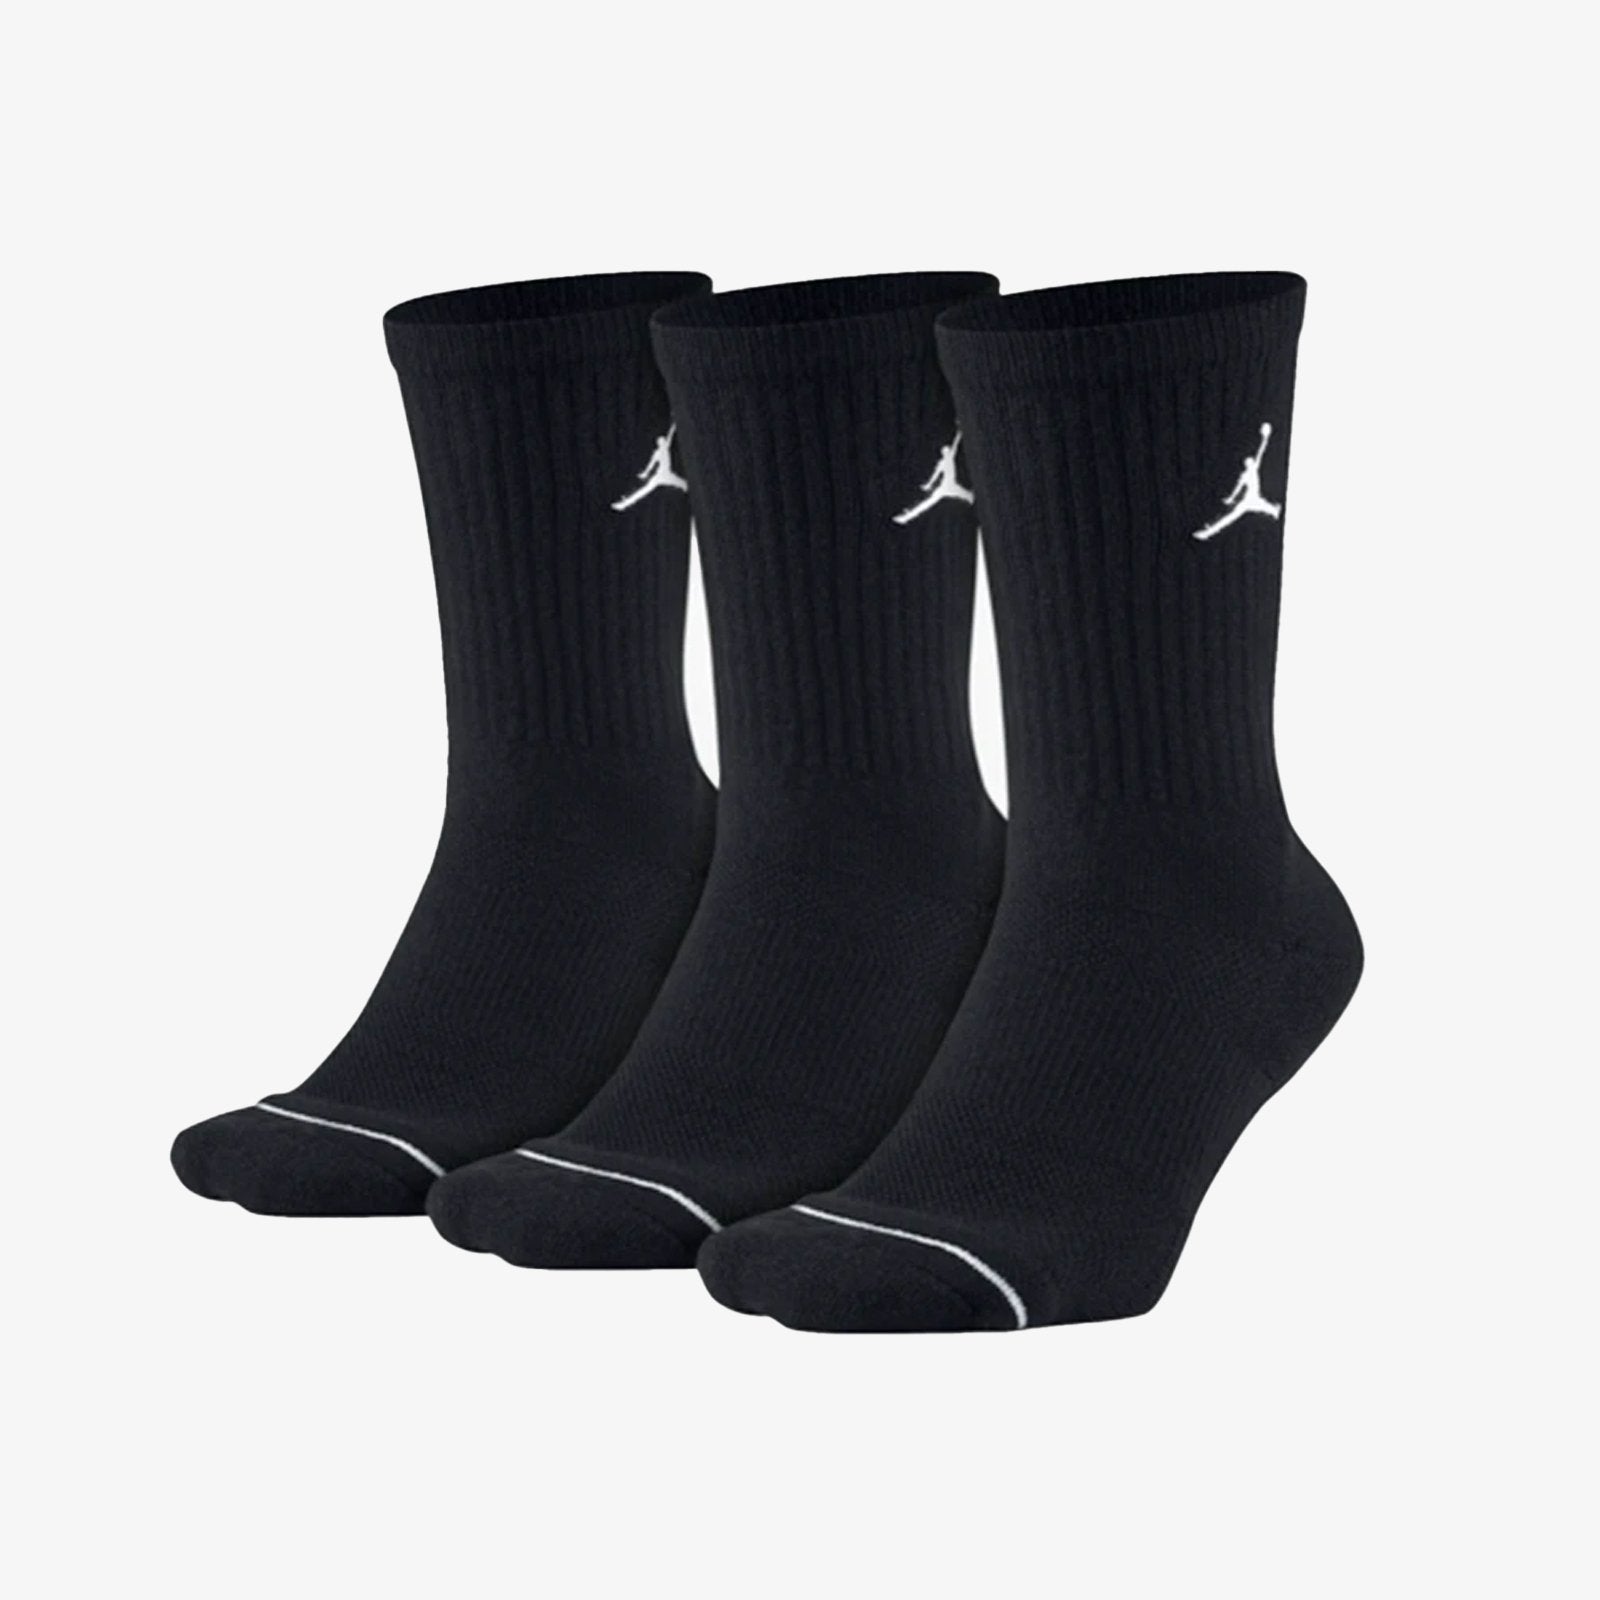 Jumpman Crew Socks (3 Pack) - Black 